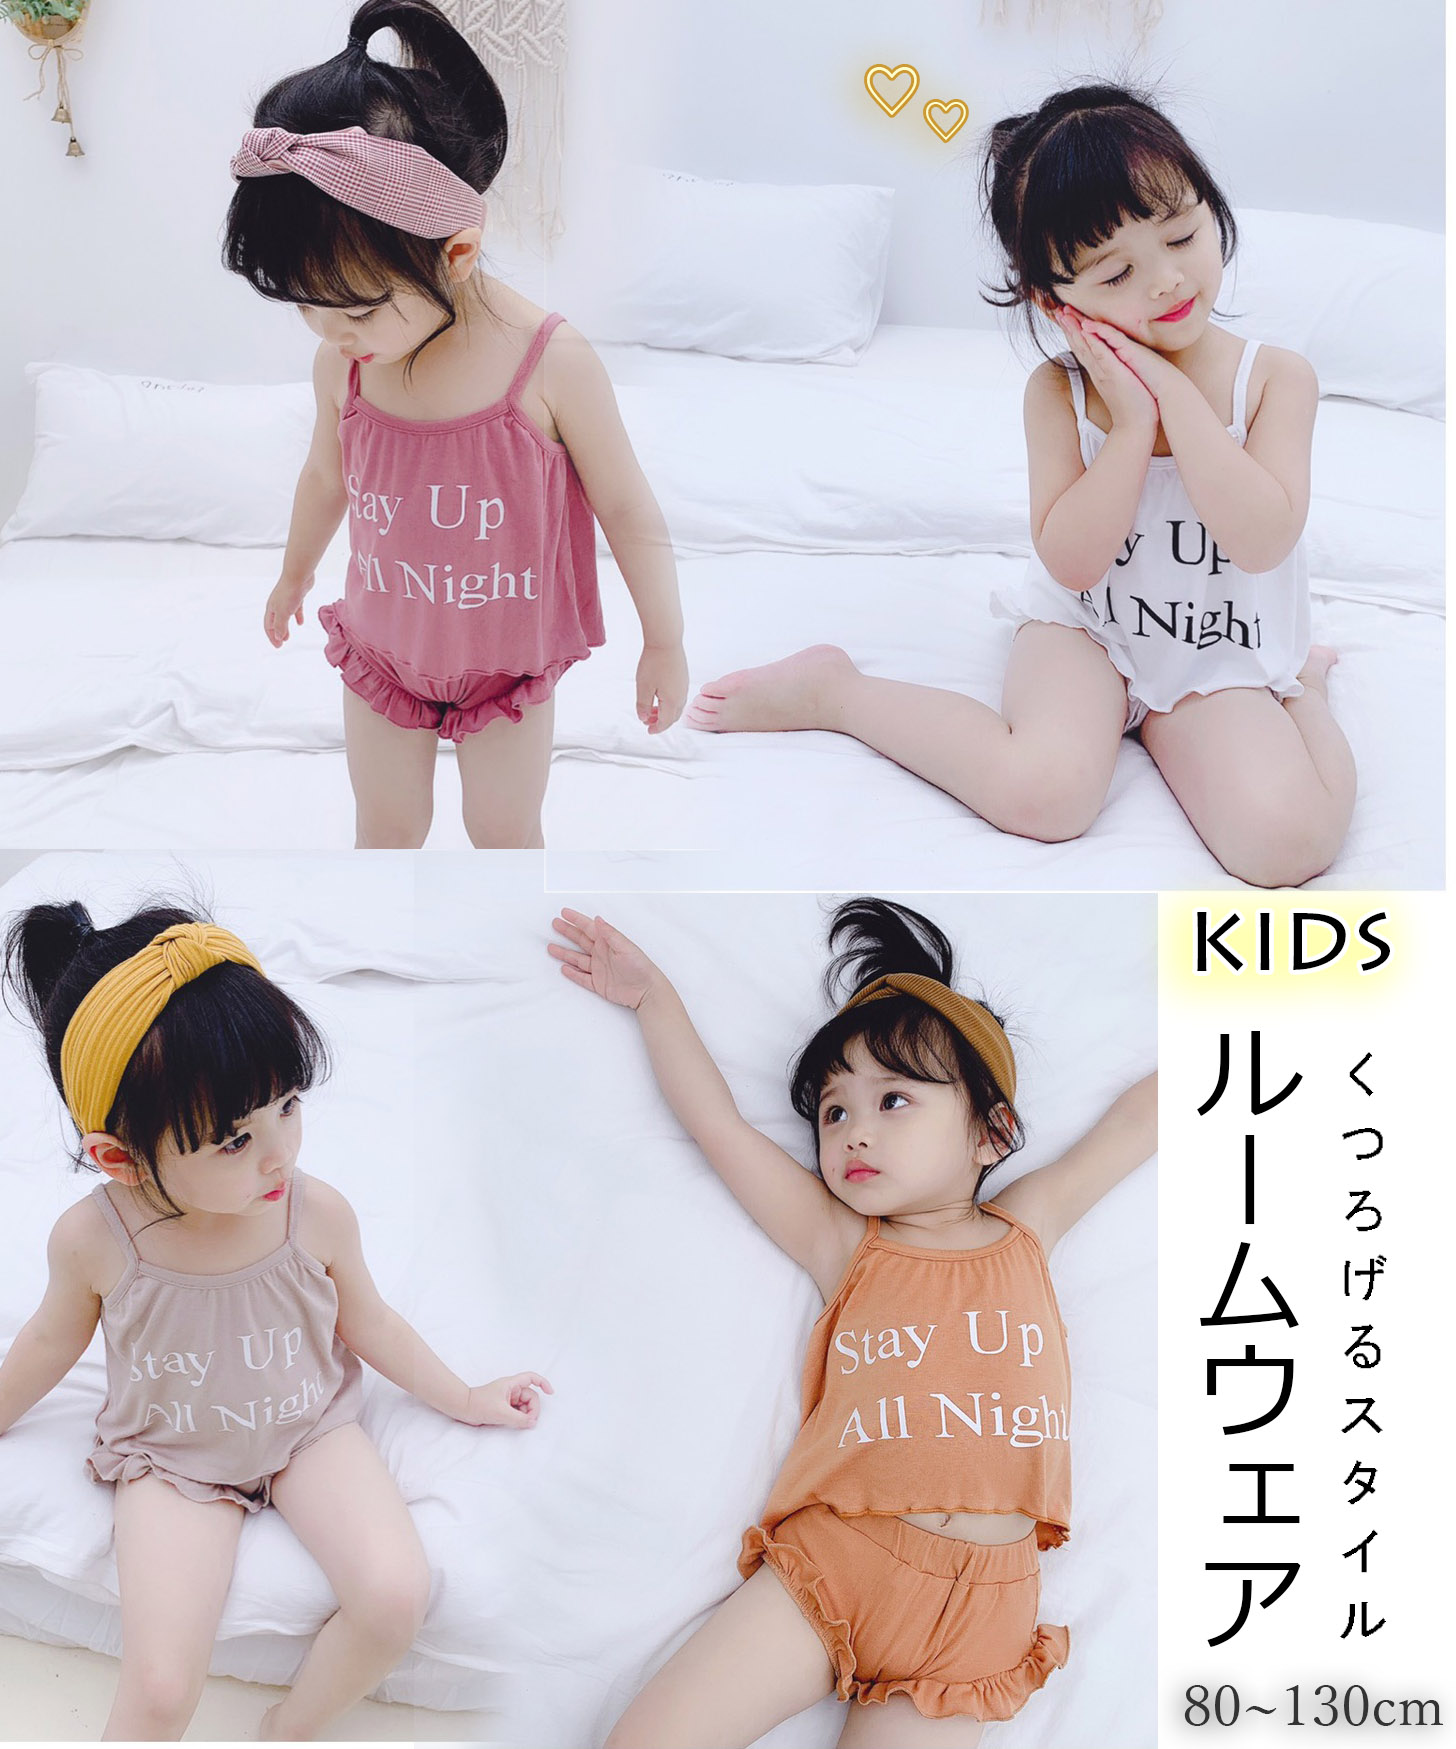 【日本倉庫即納】 韓国風 子供服 可愛いキッズ ノースリーブ パジャマ ルームウェア インナーセット フリル